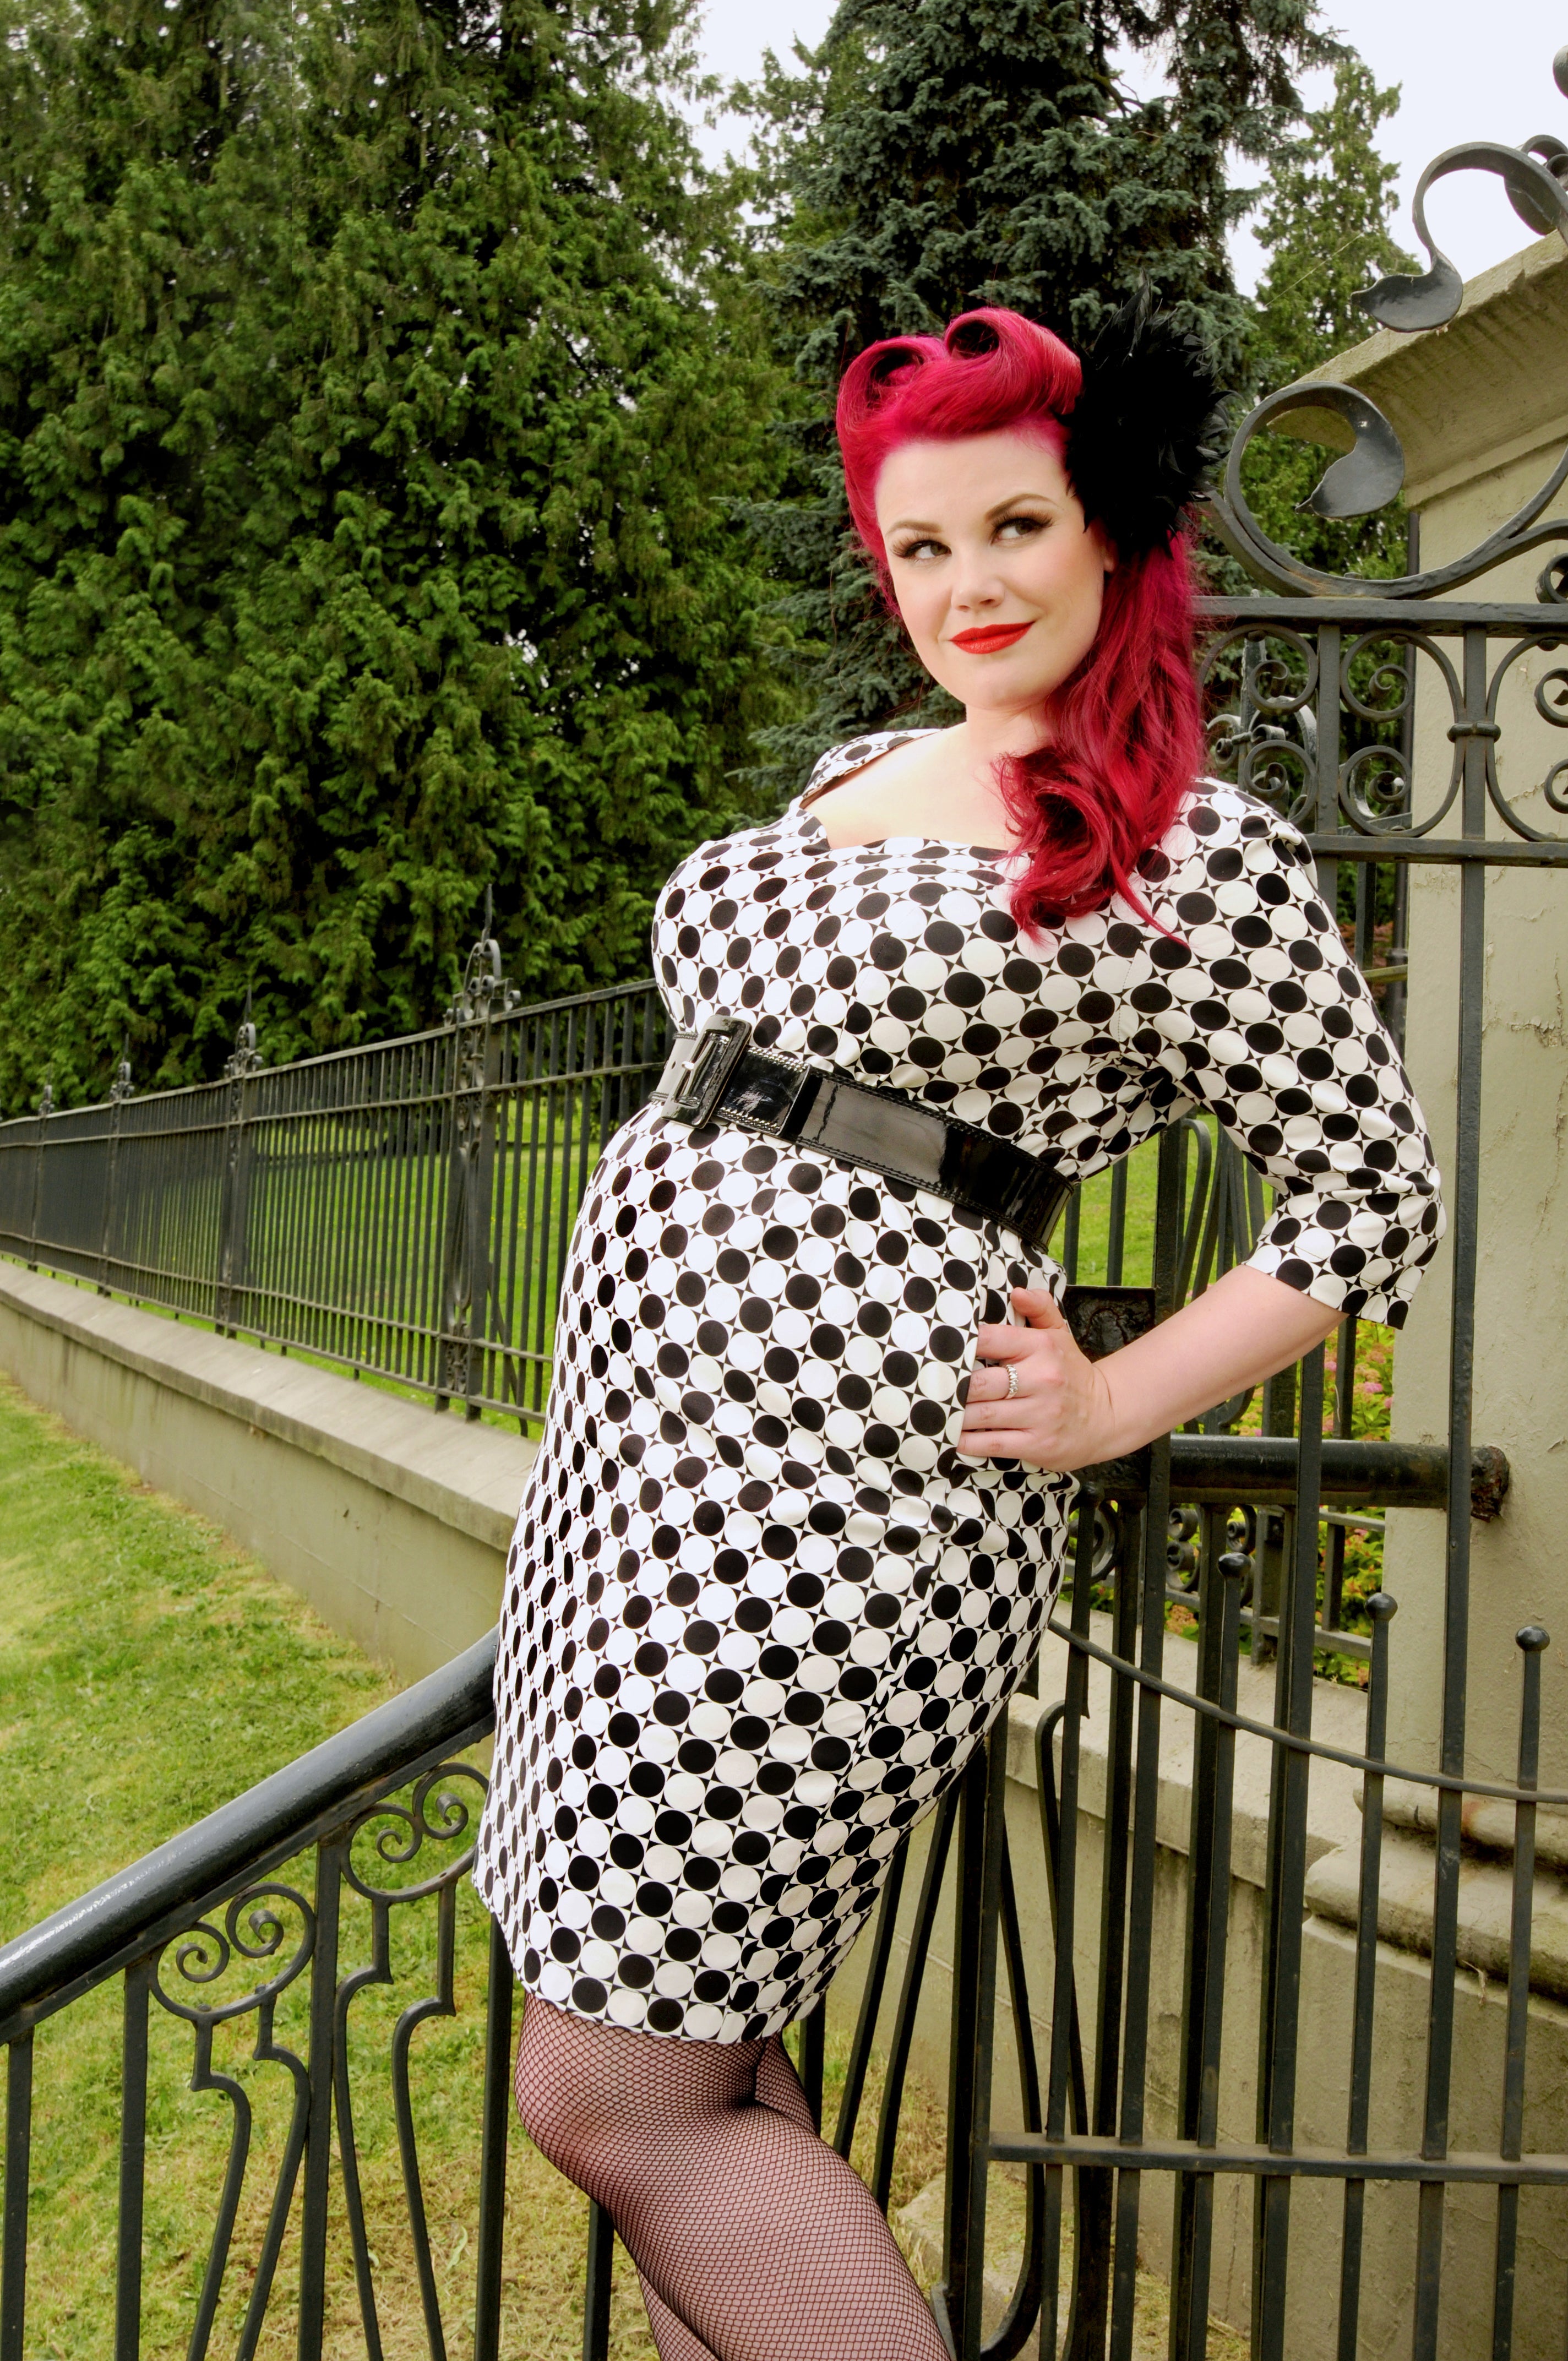 Ruby Roxx models a black and white Cherry Velvet dress called Adele